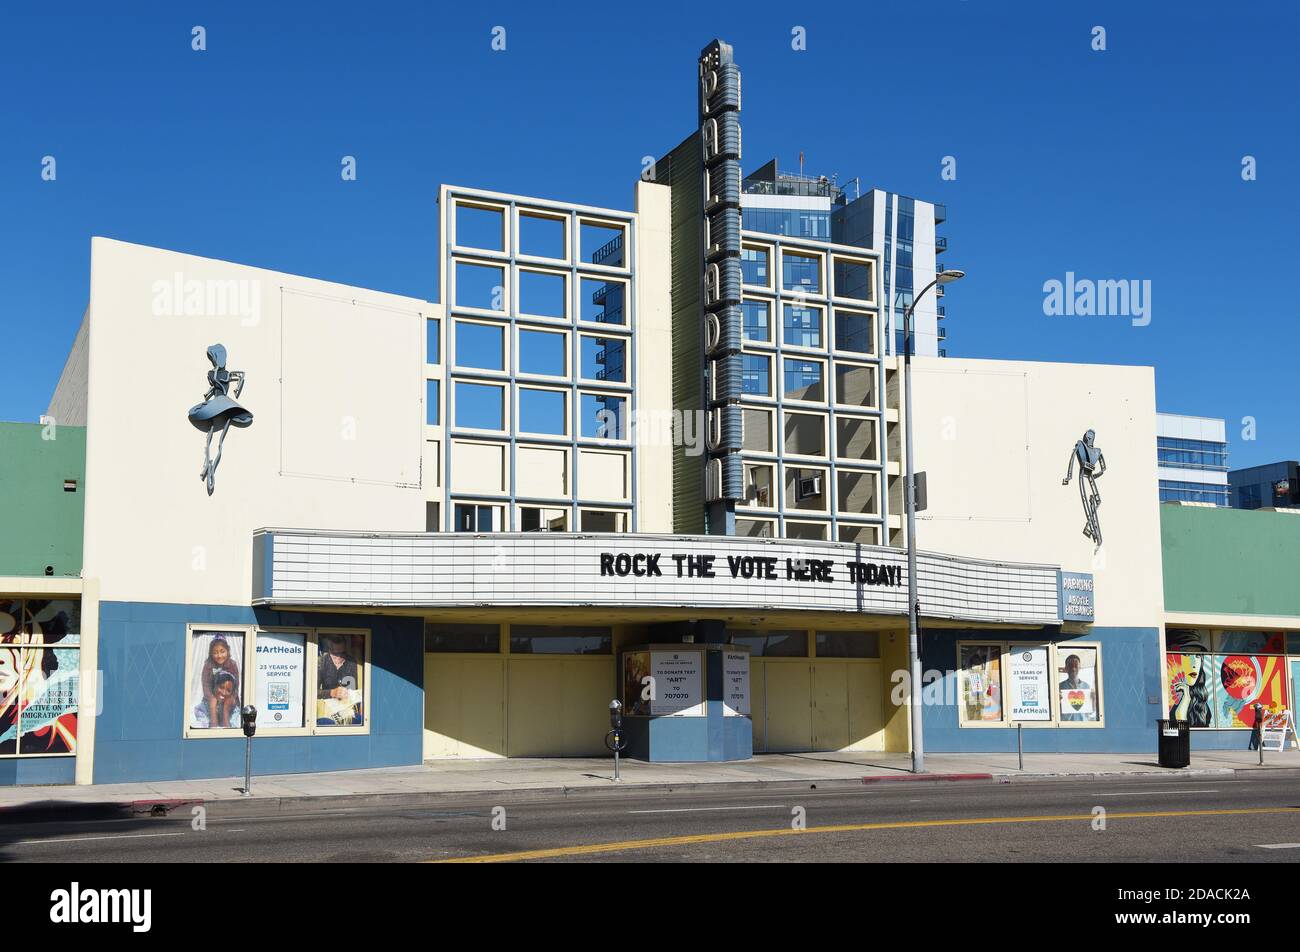 HOLLYWOOD, KALIFORNIEN - 10 NOV 2020: Das Hollywood Palladium, ein Theater im Streamline Moderne, Art Deco Stil. Stockfoto